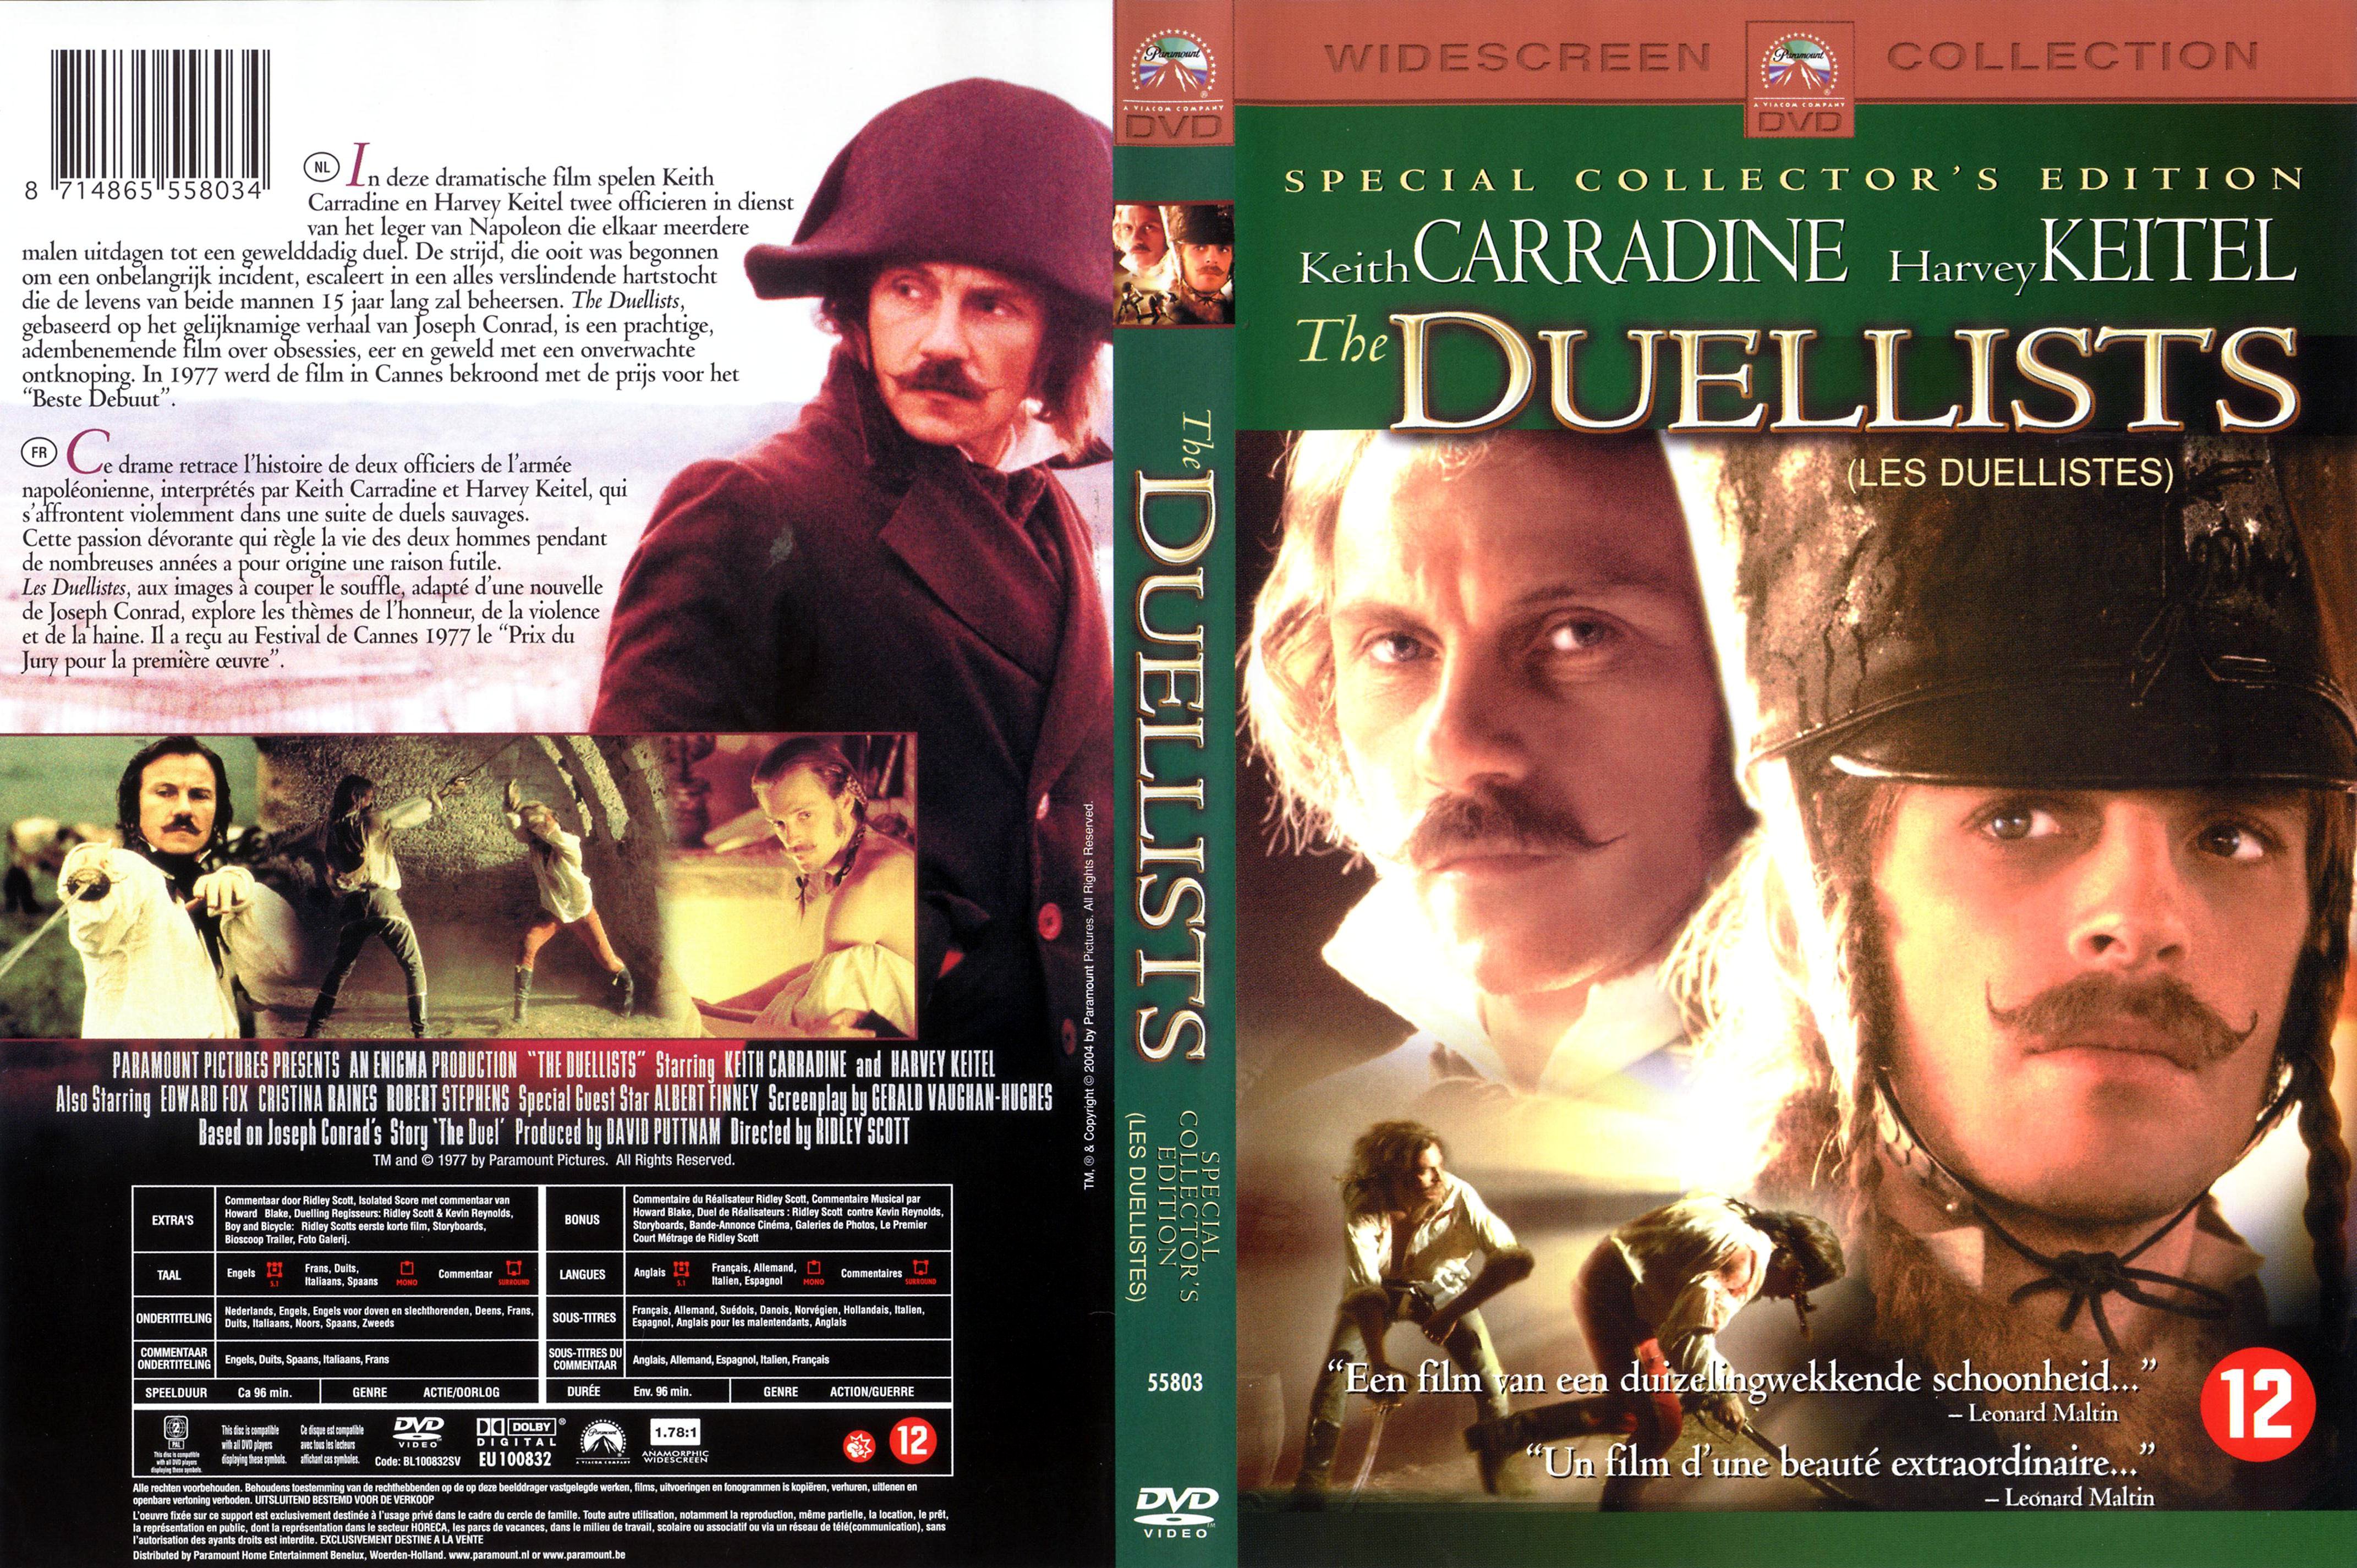 Jaquette DVD Les duellistes v2